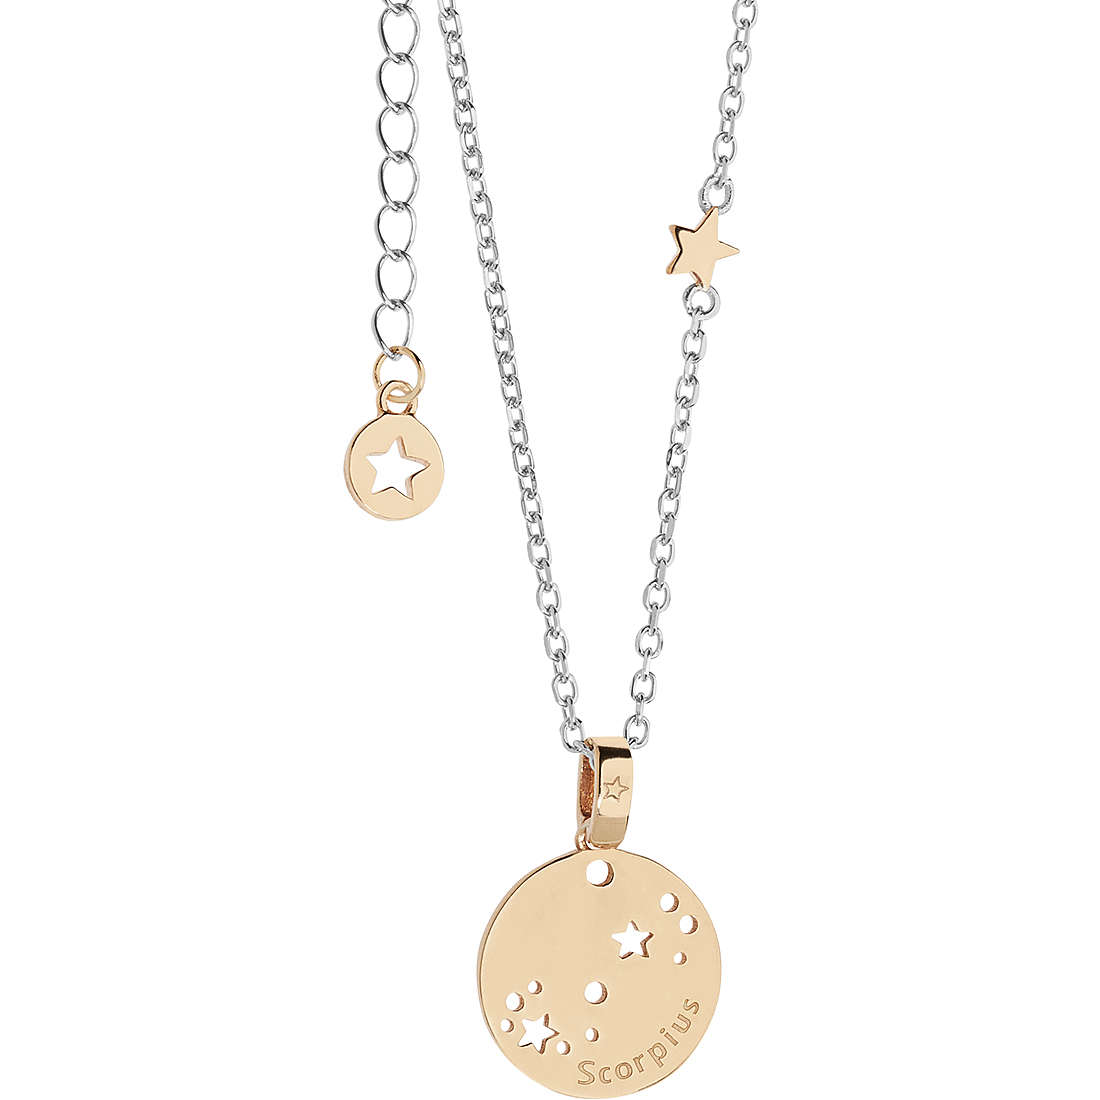 necklace woman zodiac sign Scorpio Comete jewel Stella GLA 218